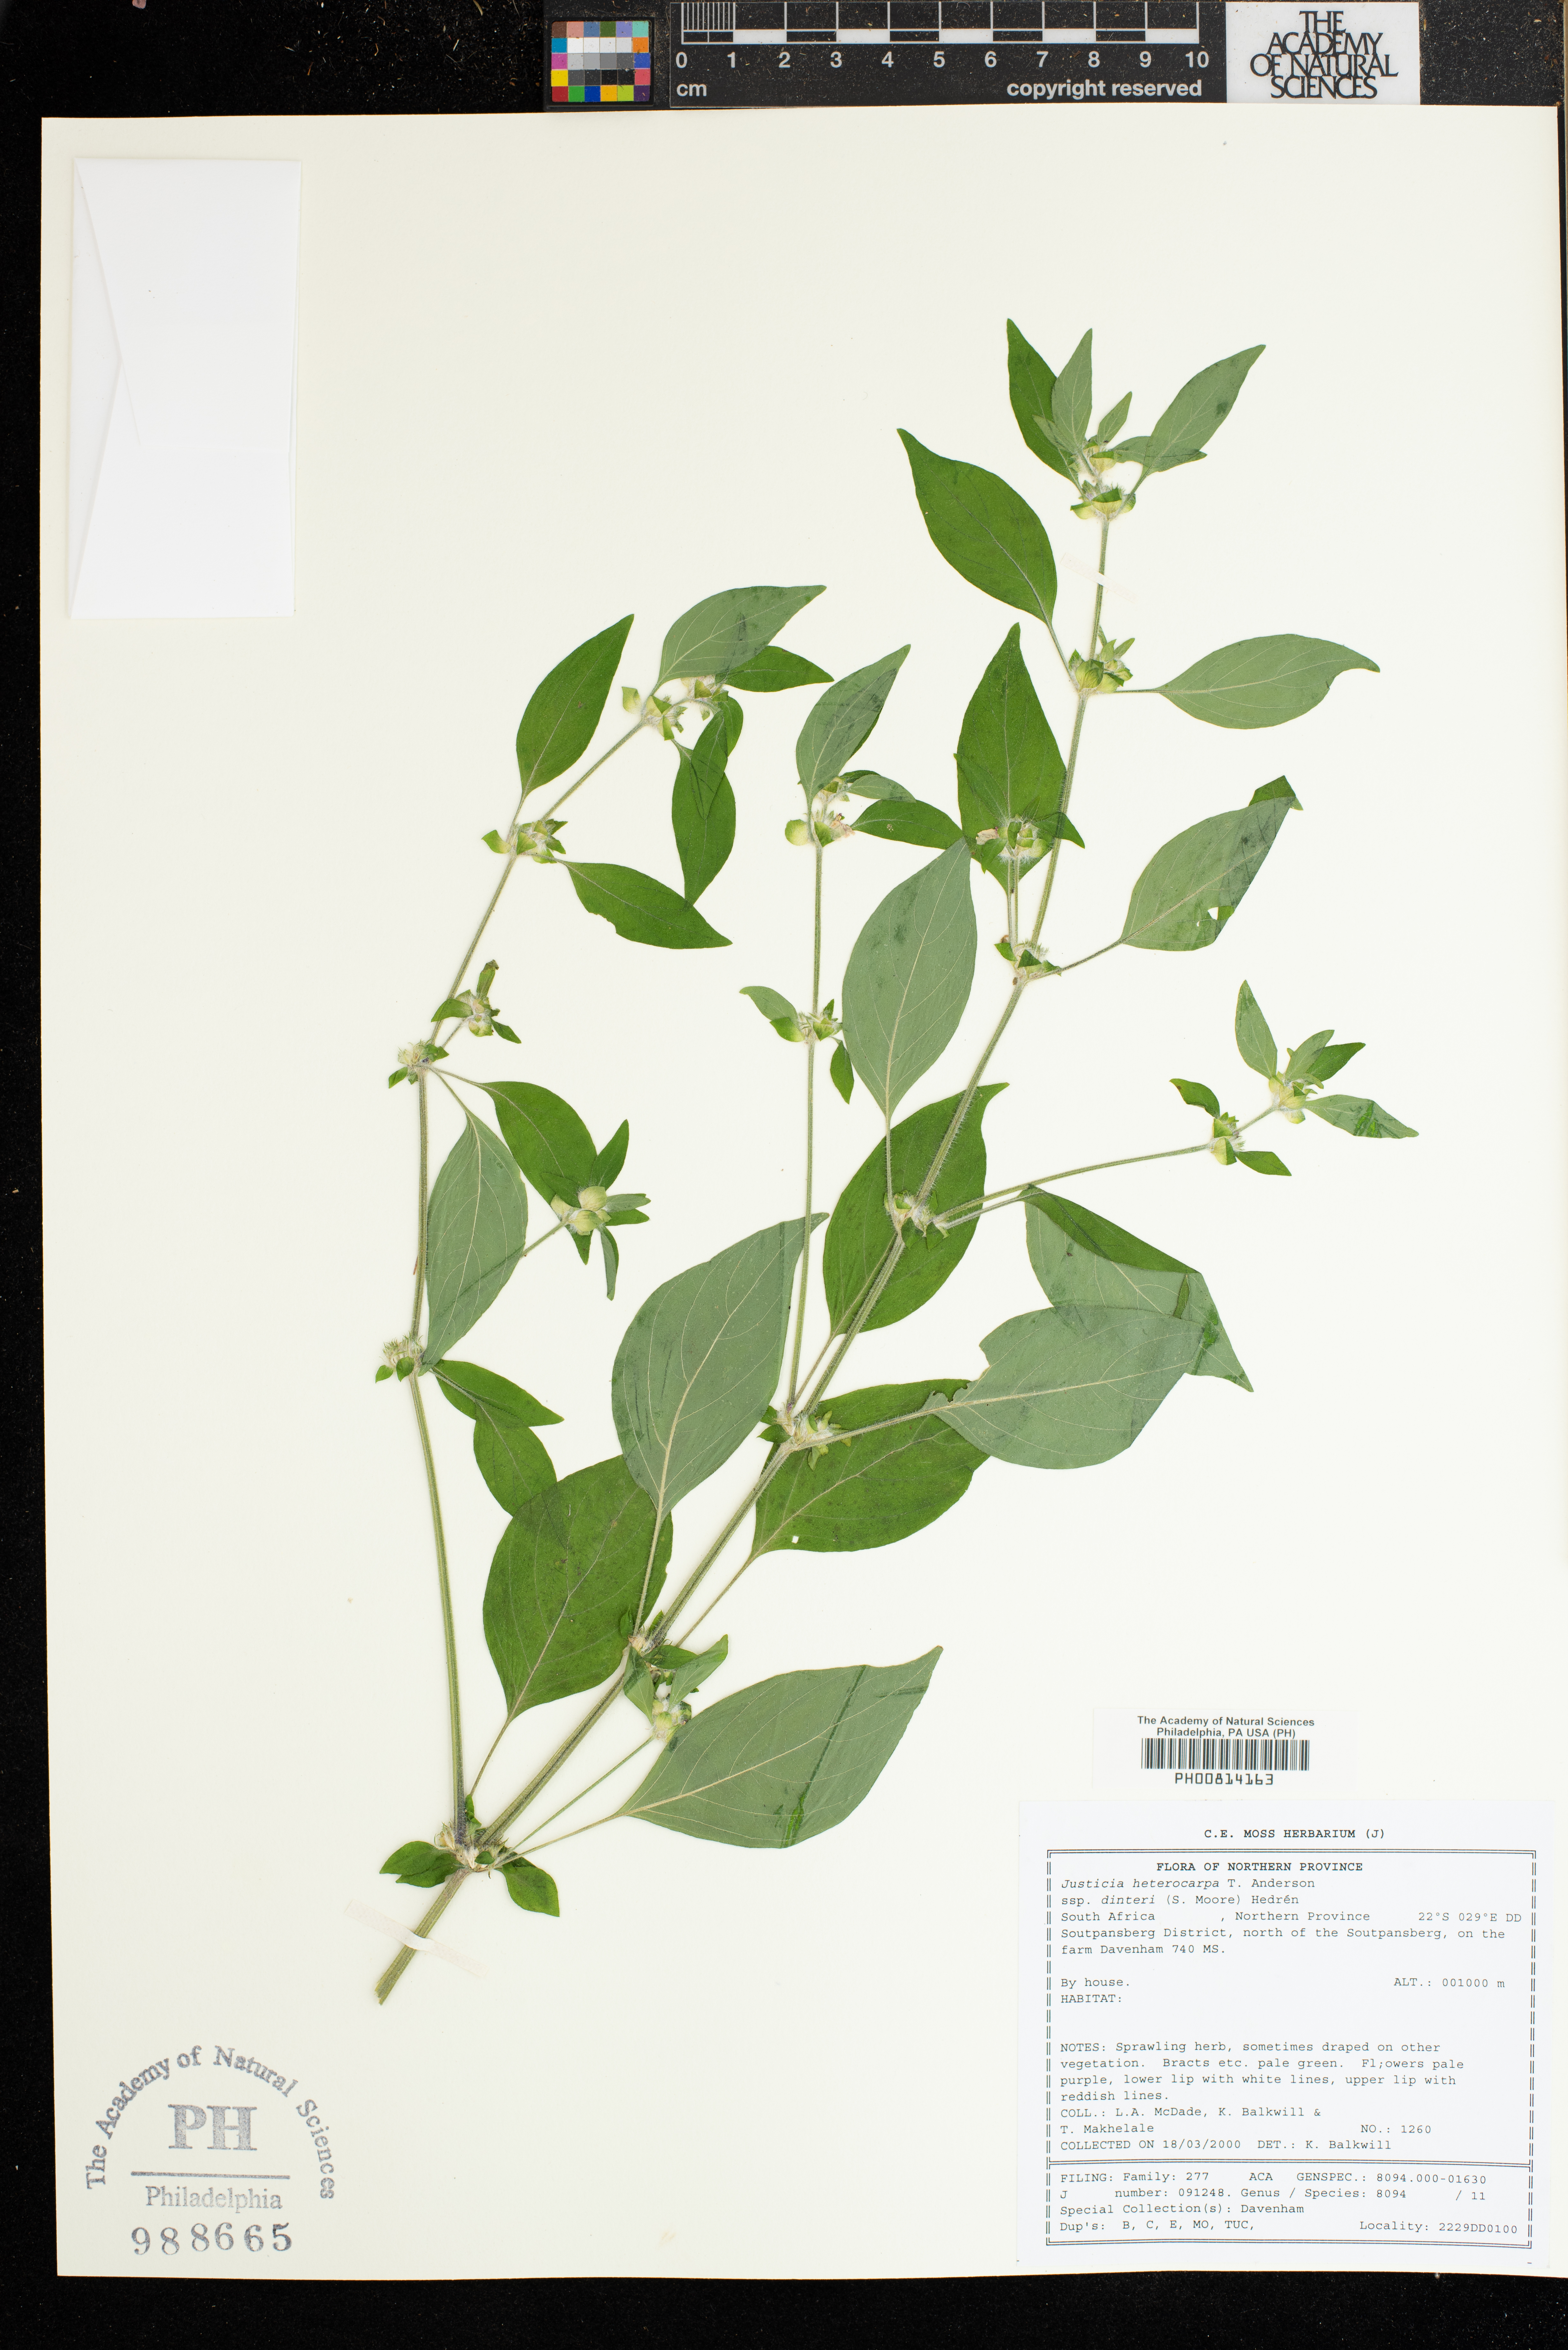 Justicia heterocarpa subsp. dinteri image